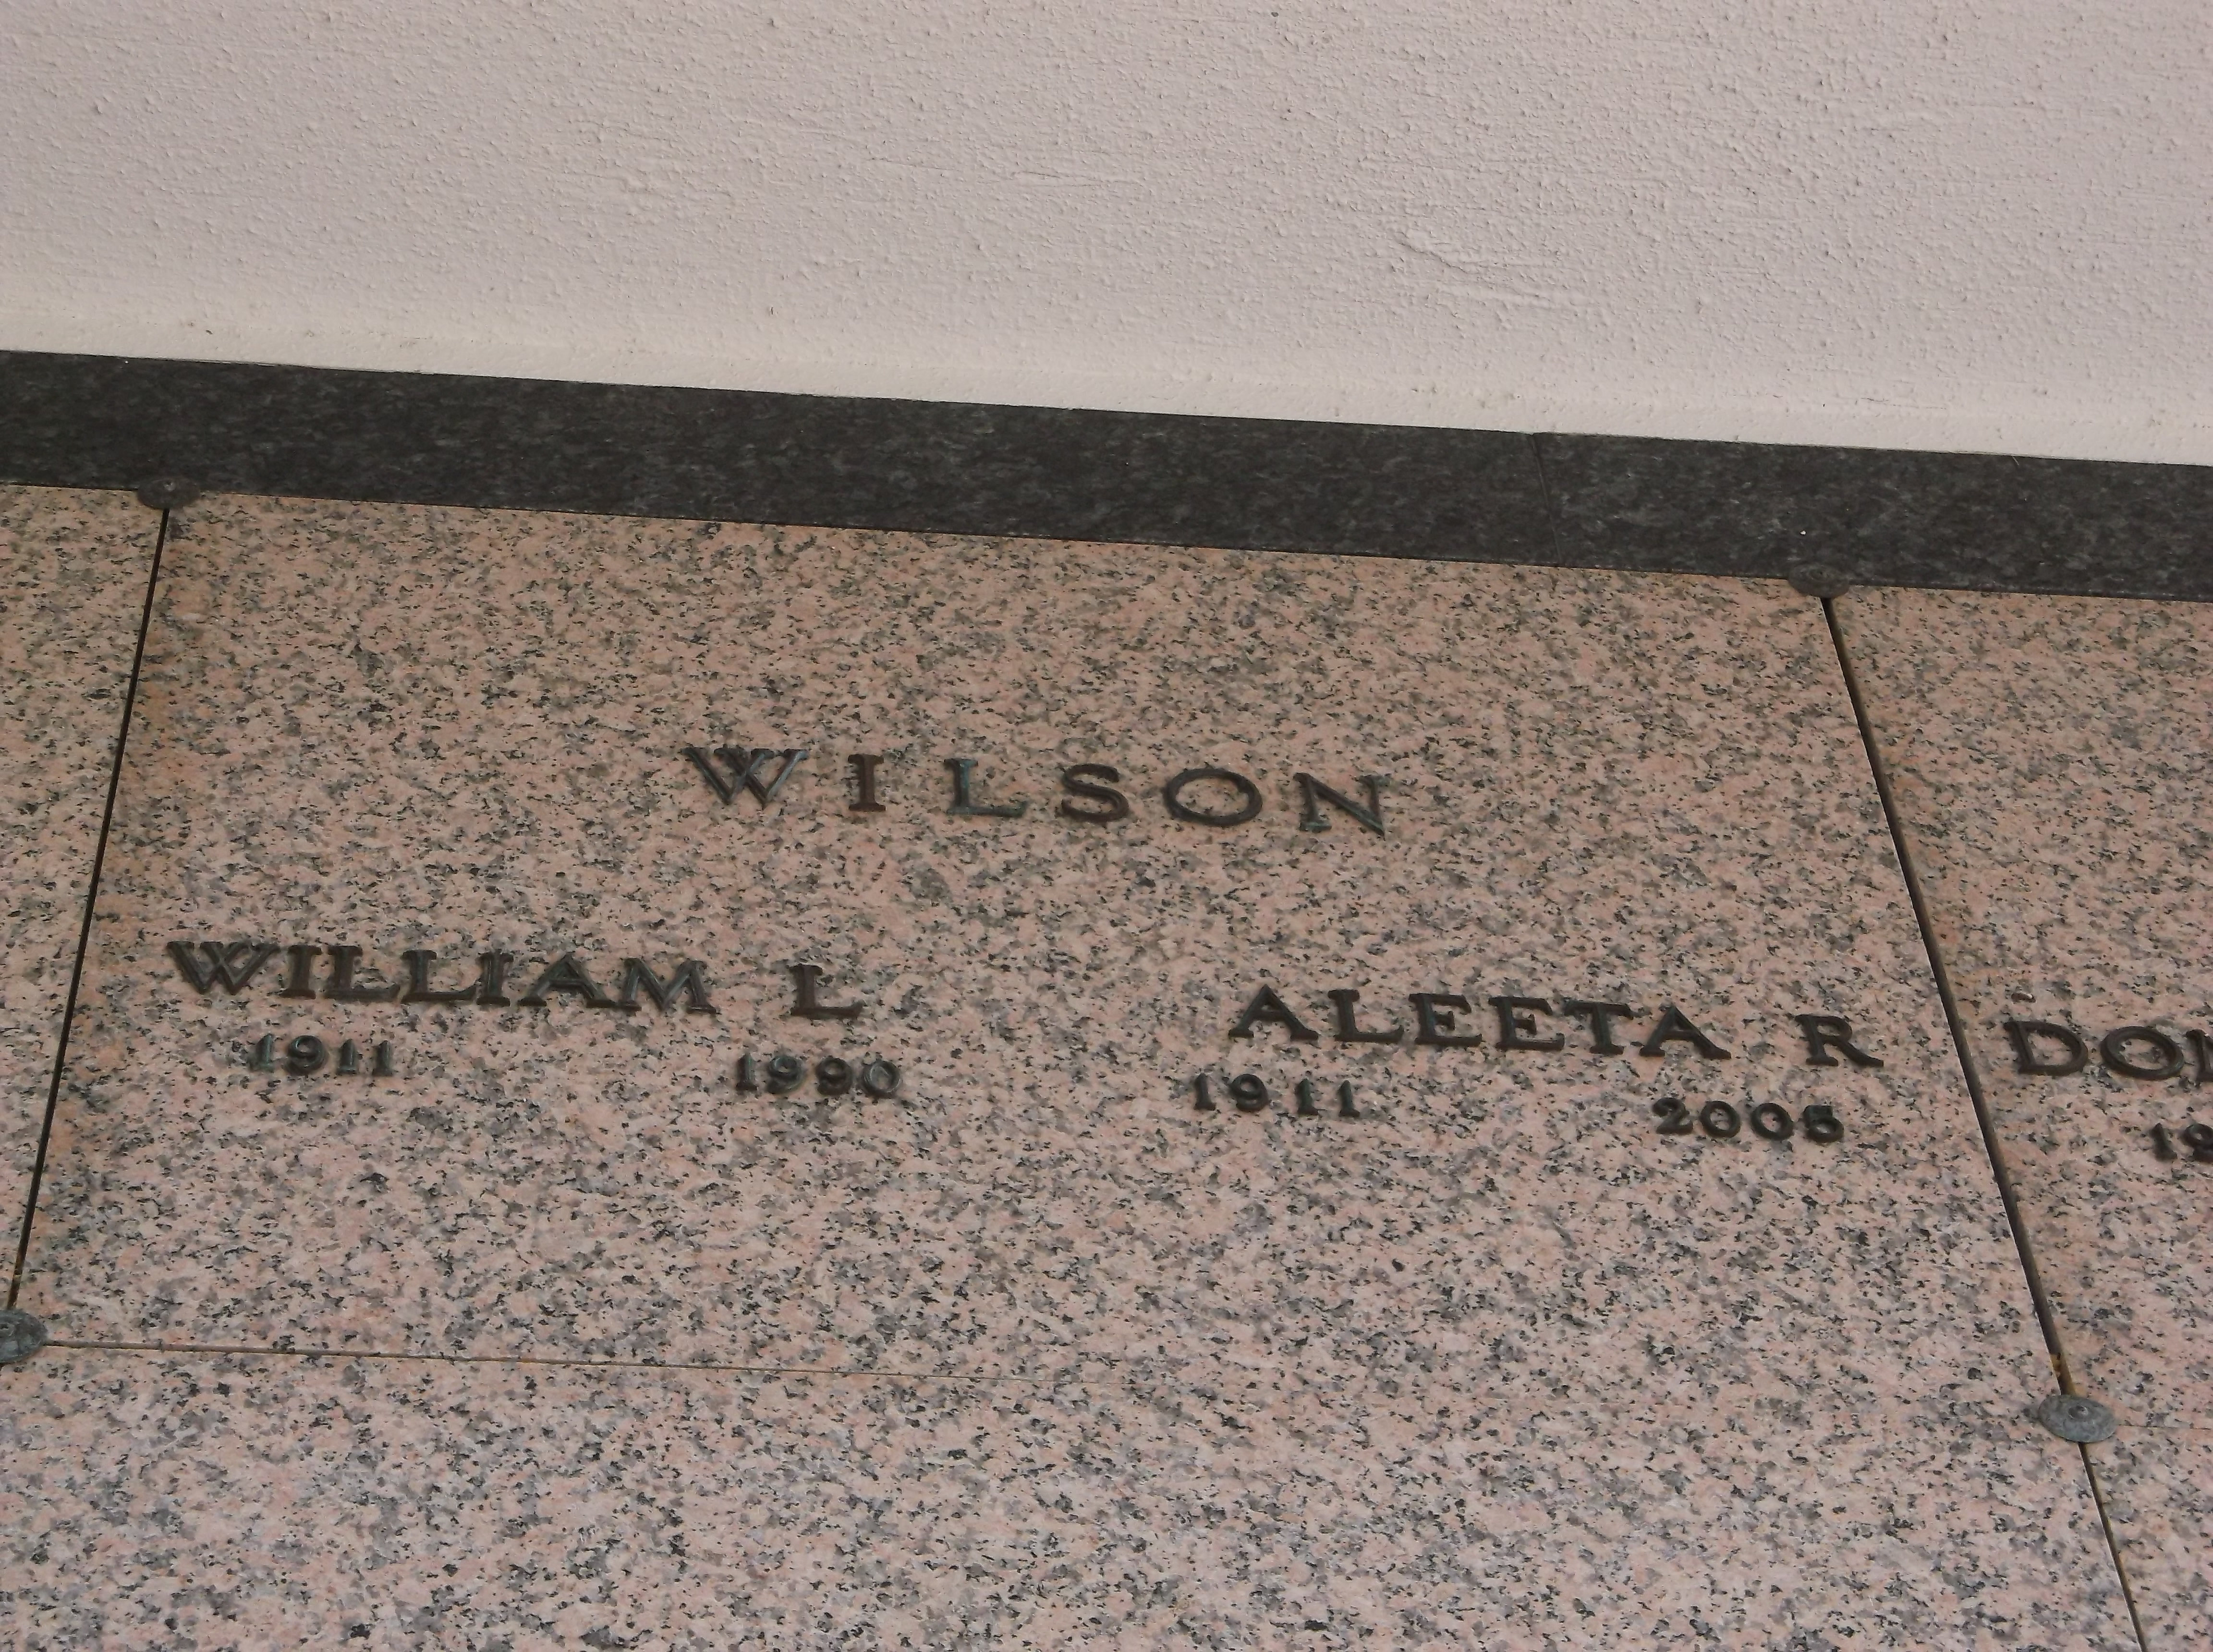 William L Wilson